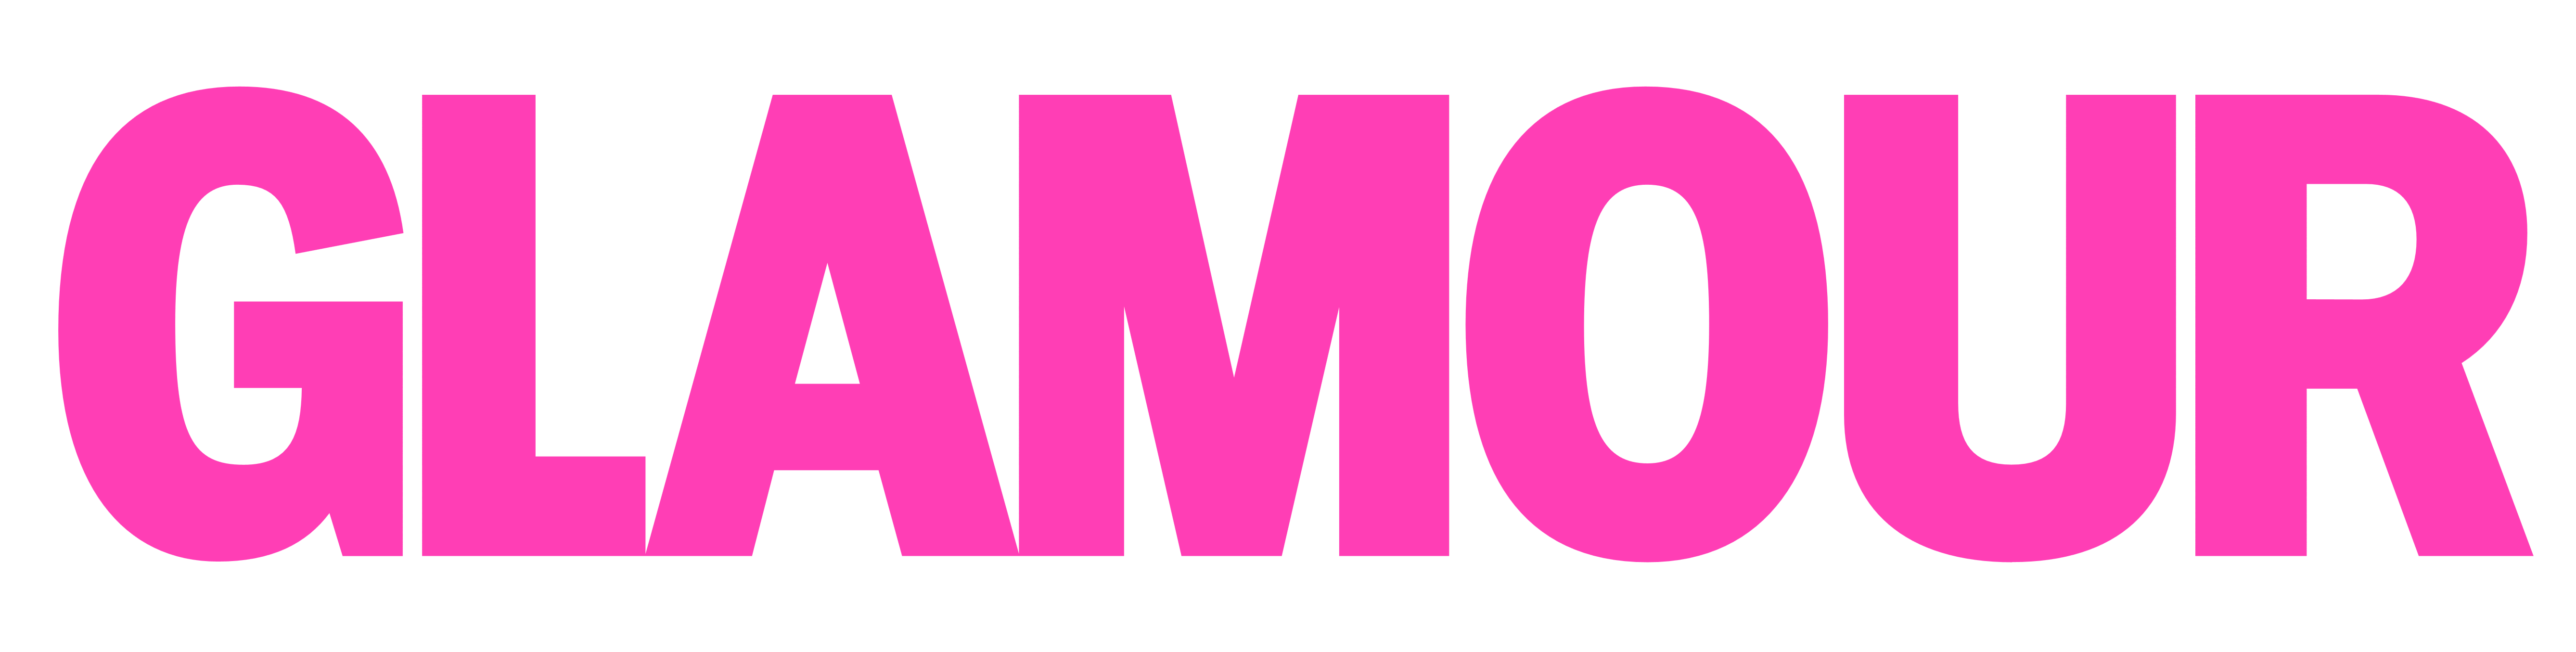 Glamour logo, logotype